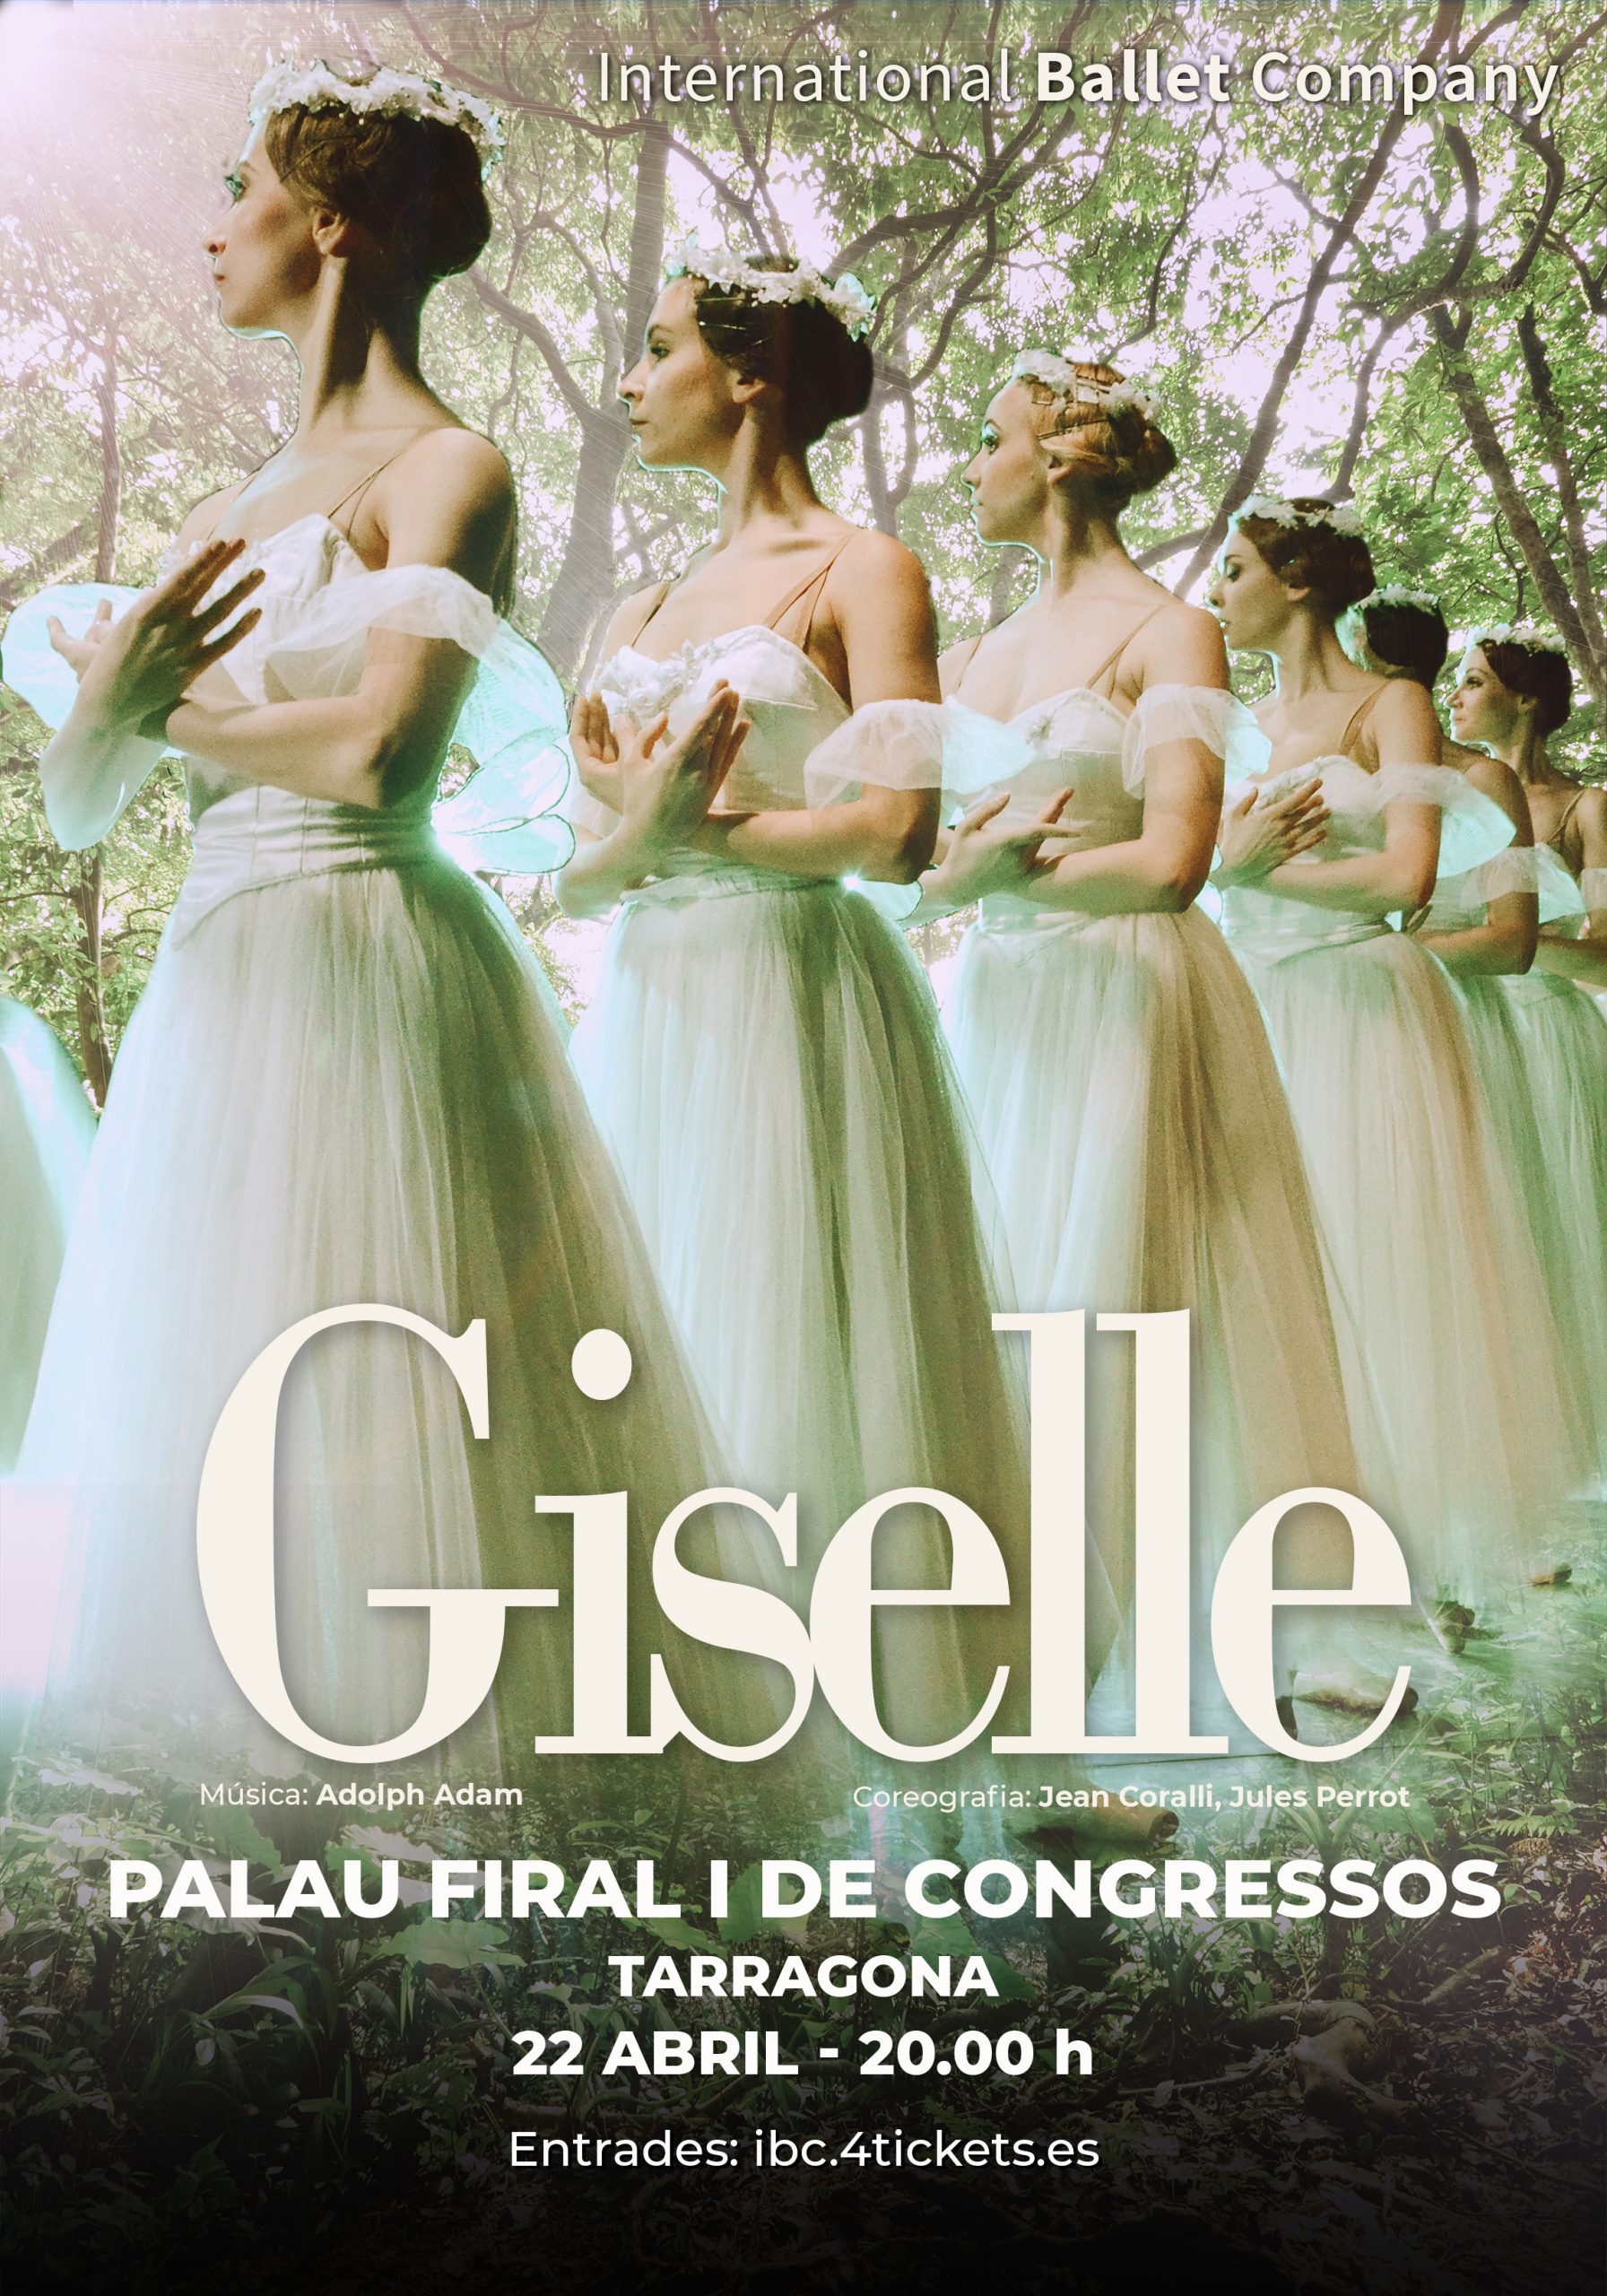 TARRAGONA CARTEL Giselle 1 scaled - Palau Firal i de Congressos de Tarragona